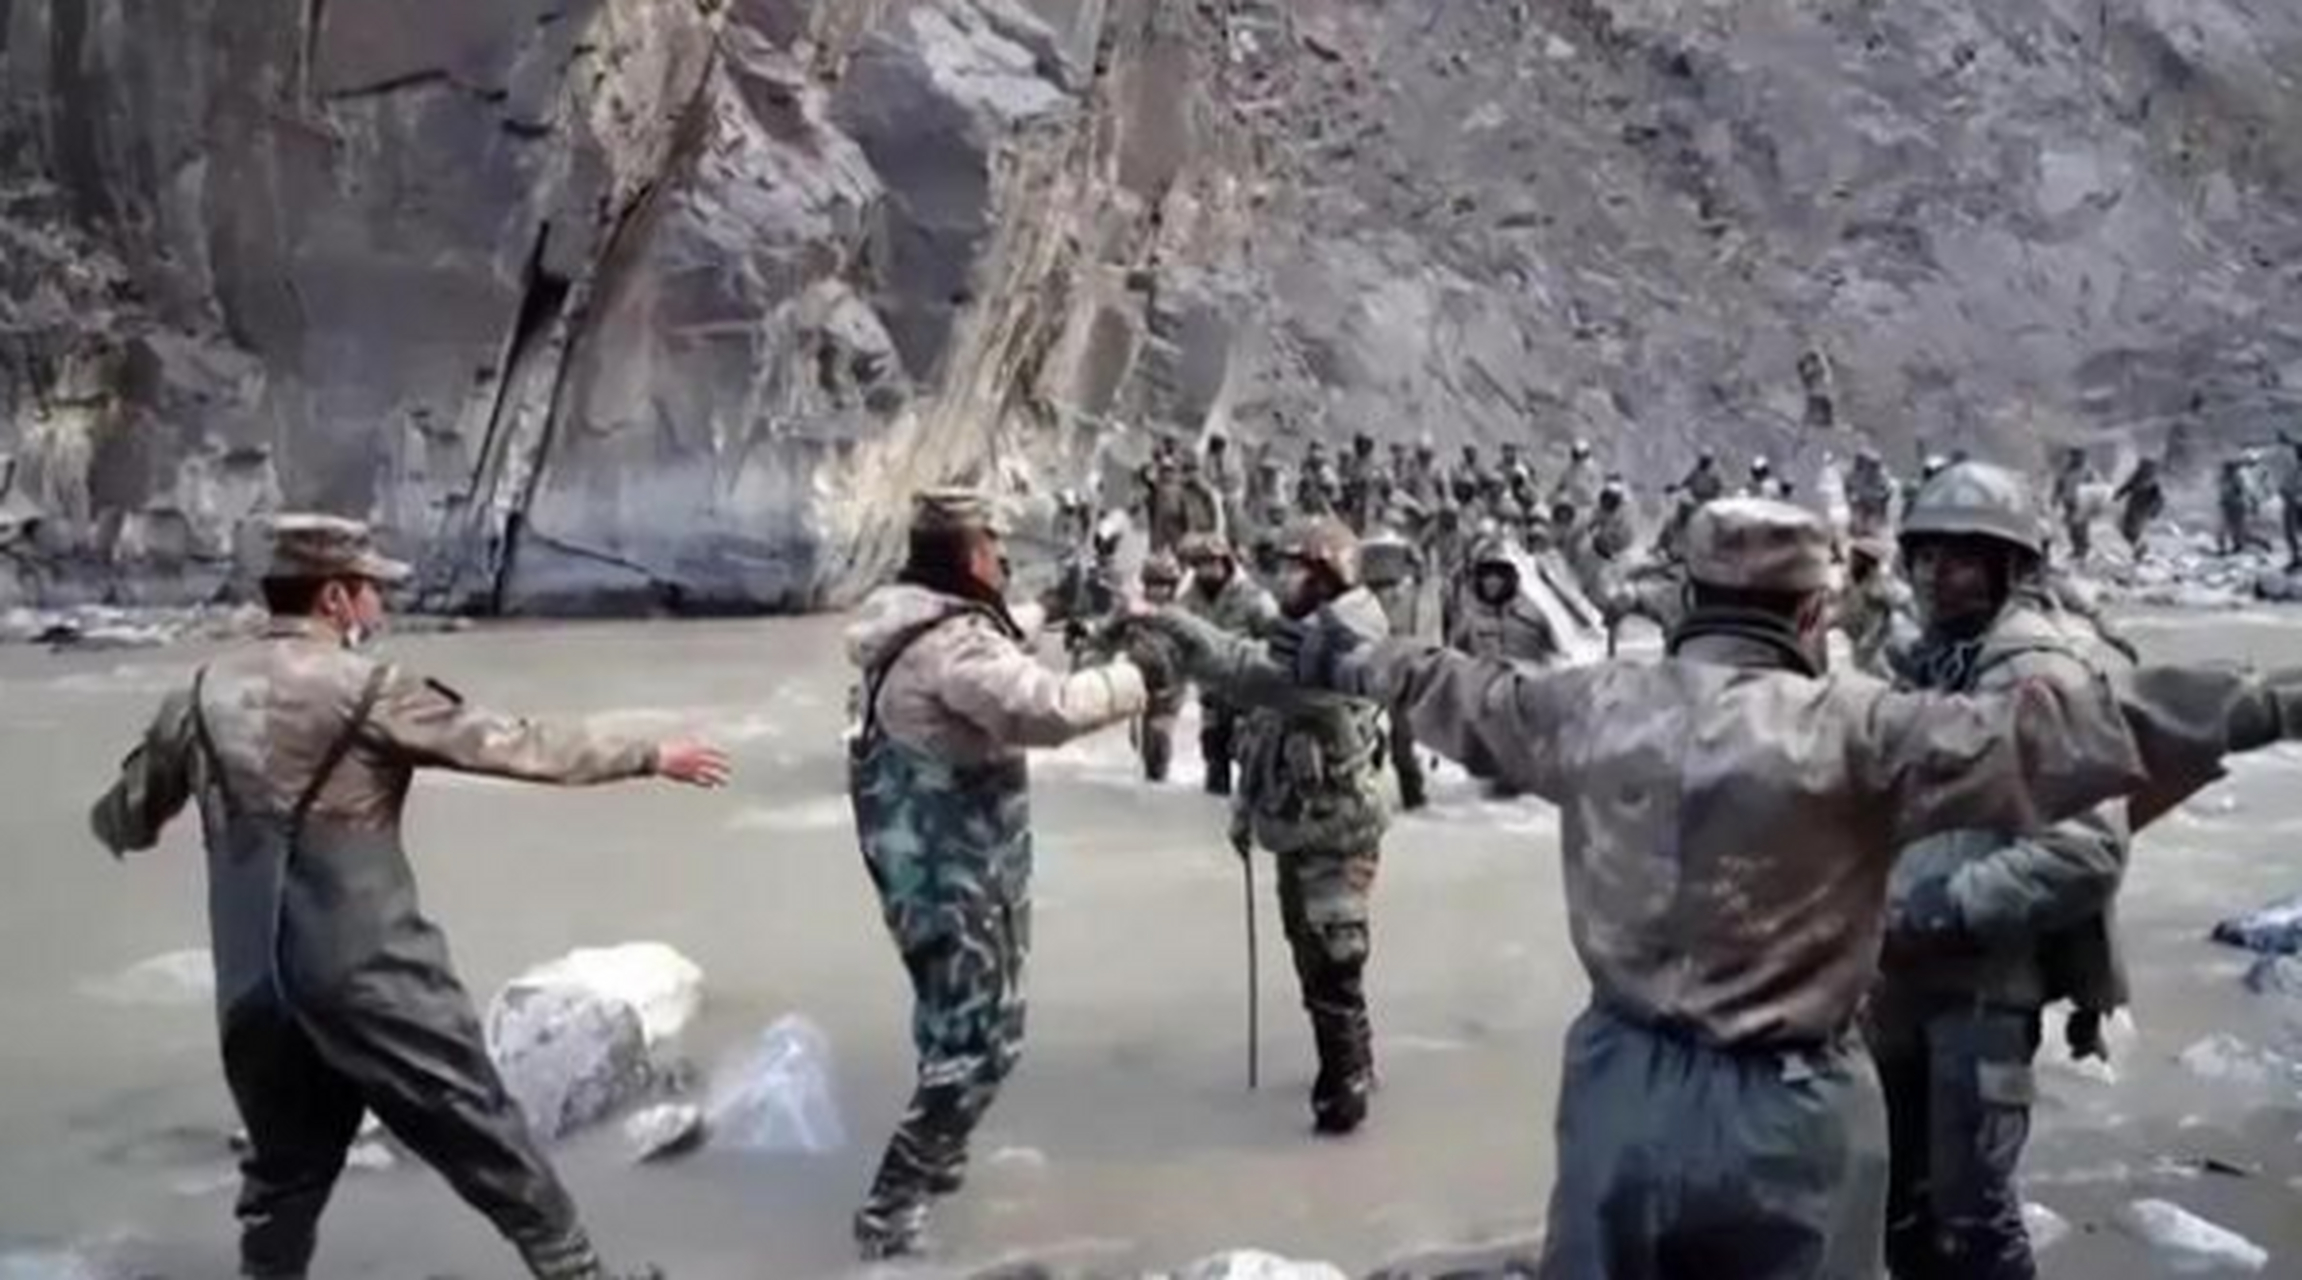 中印边境冲突:中国解放军骑兵追击印度官兵  根据8月1日的报道,有消息